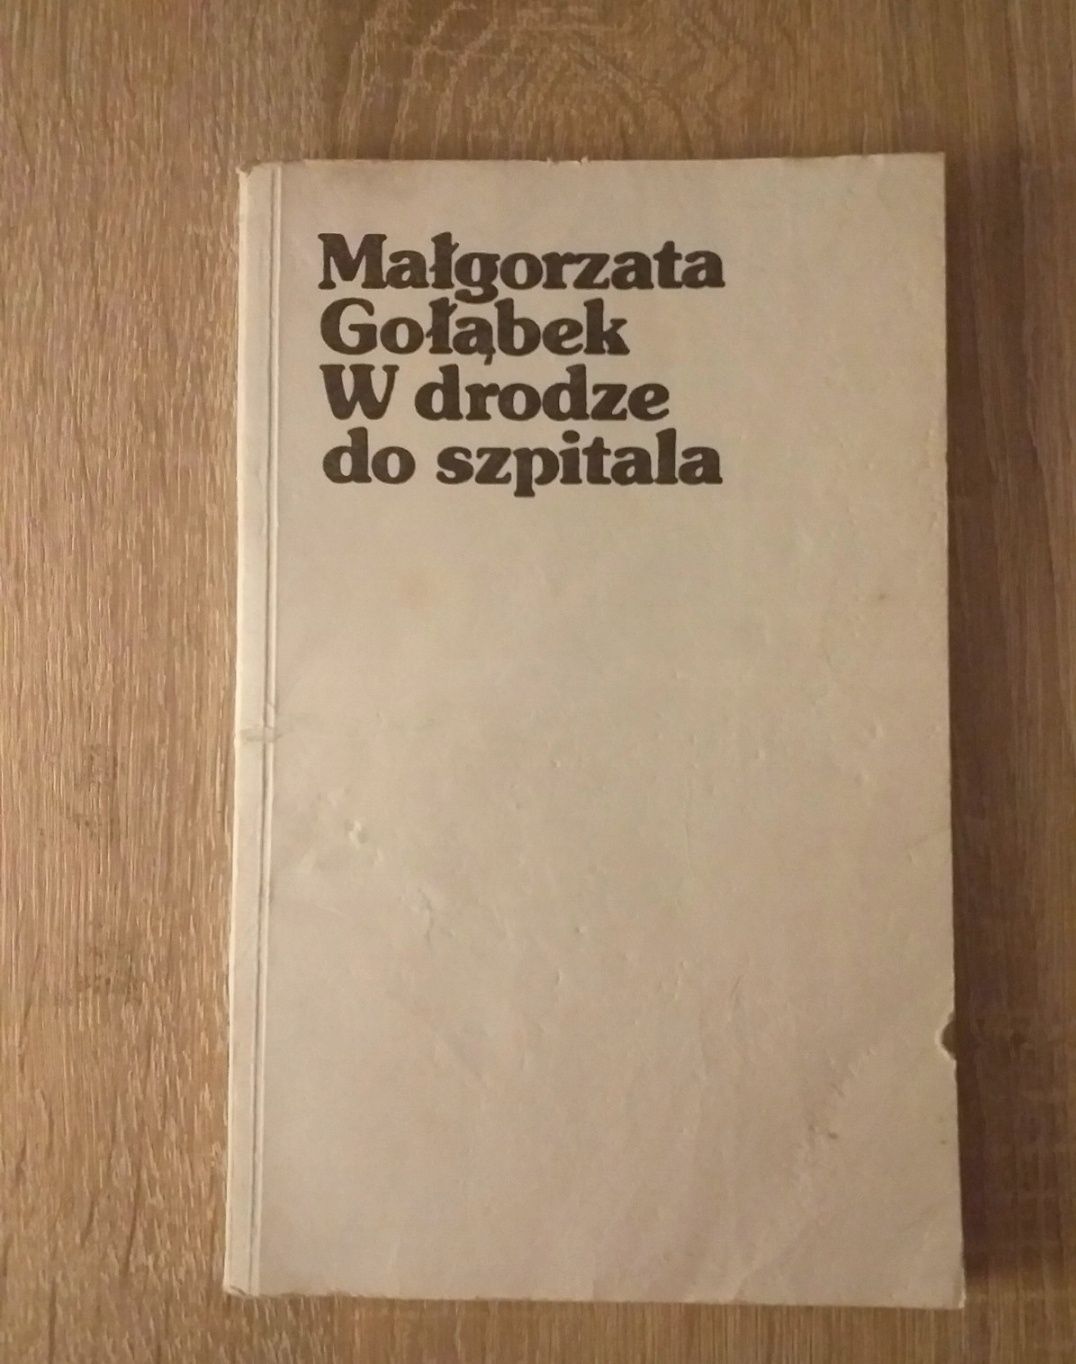 Książka zbiór opowiadań "W drodze do szpitala" Gołąbek